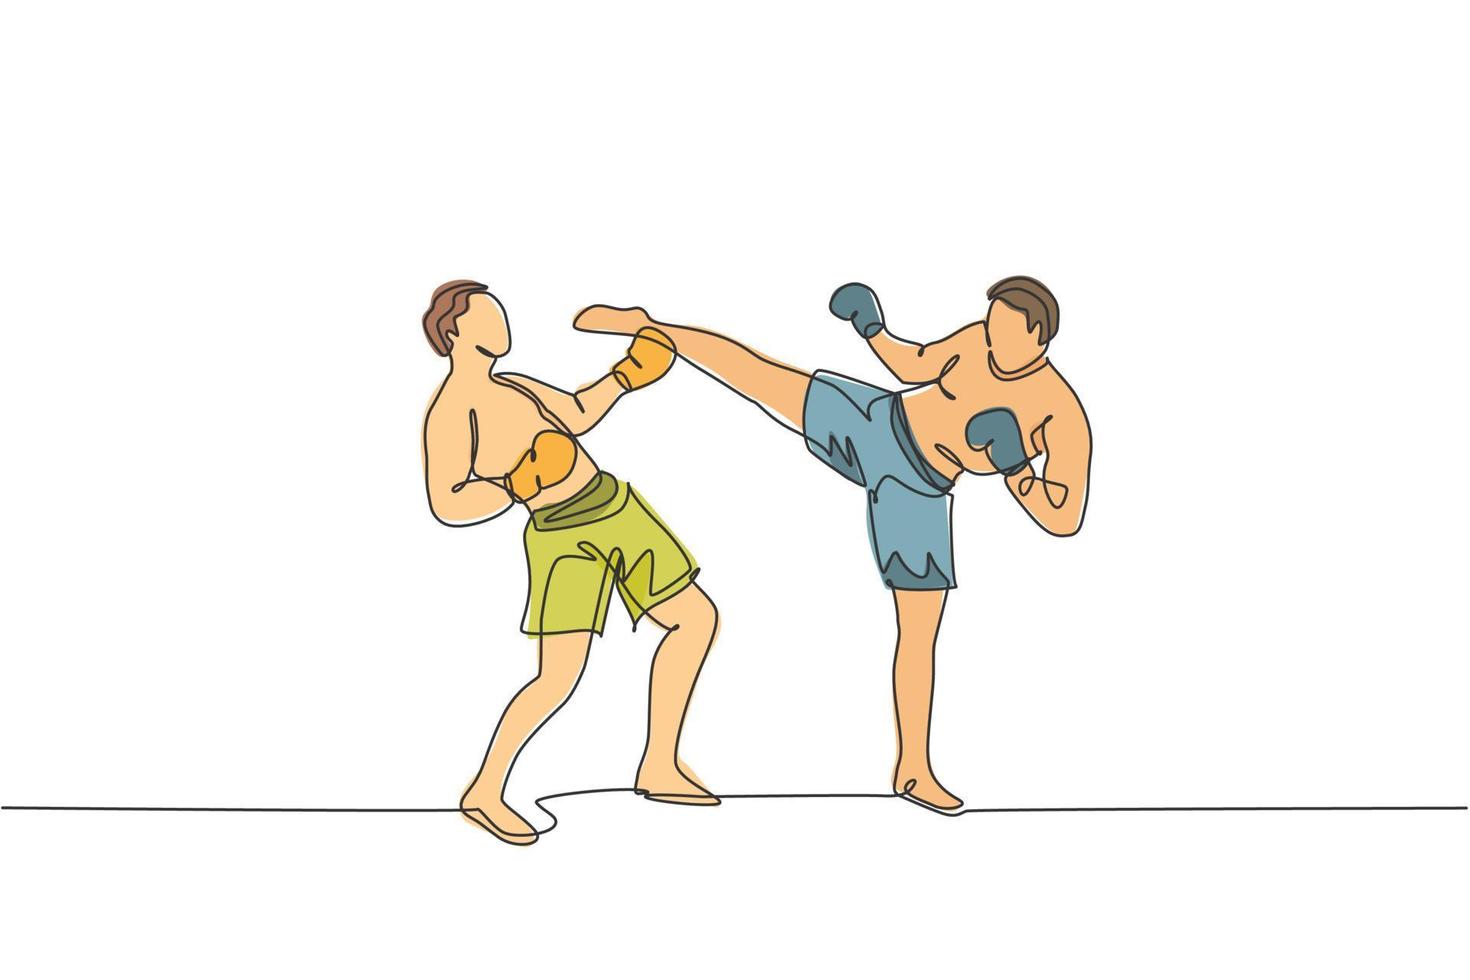 en enda linjeritning av ung energisk man kickboxare praxis sparring kamp med partner i boxningsarena vektorillustration. hälsosam livsstil sport koncept. modern kontinuerlig linjeritningsdesign vektor